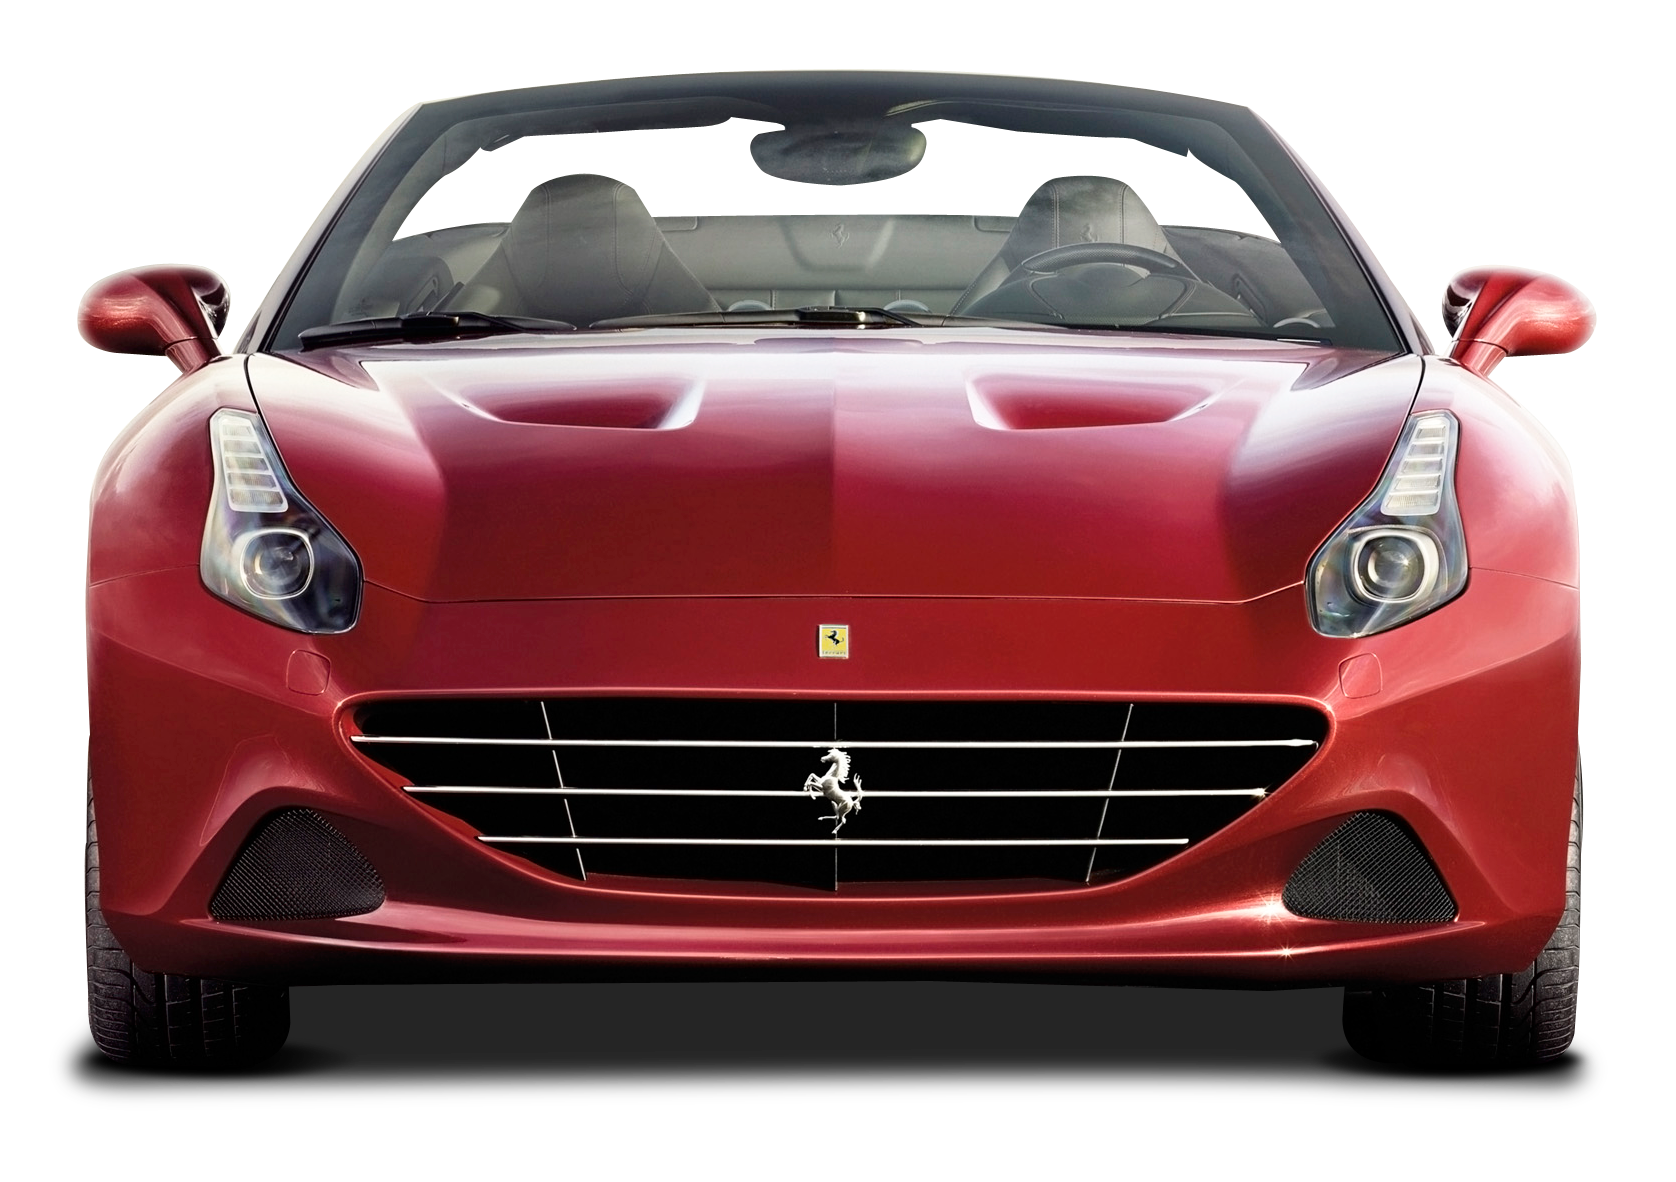 Front View of Ferrari California T Car PNG Image